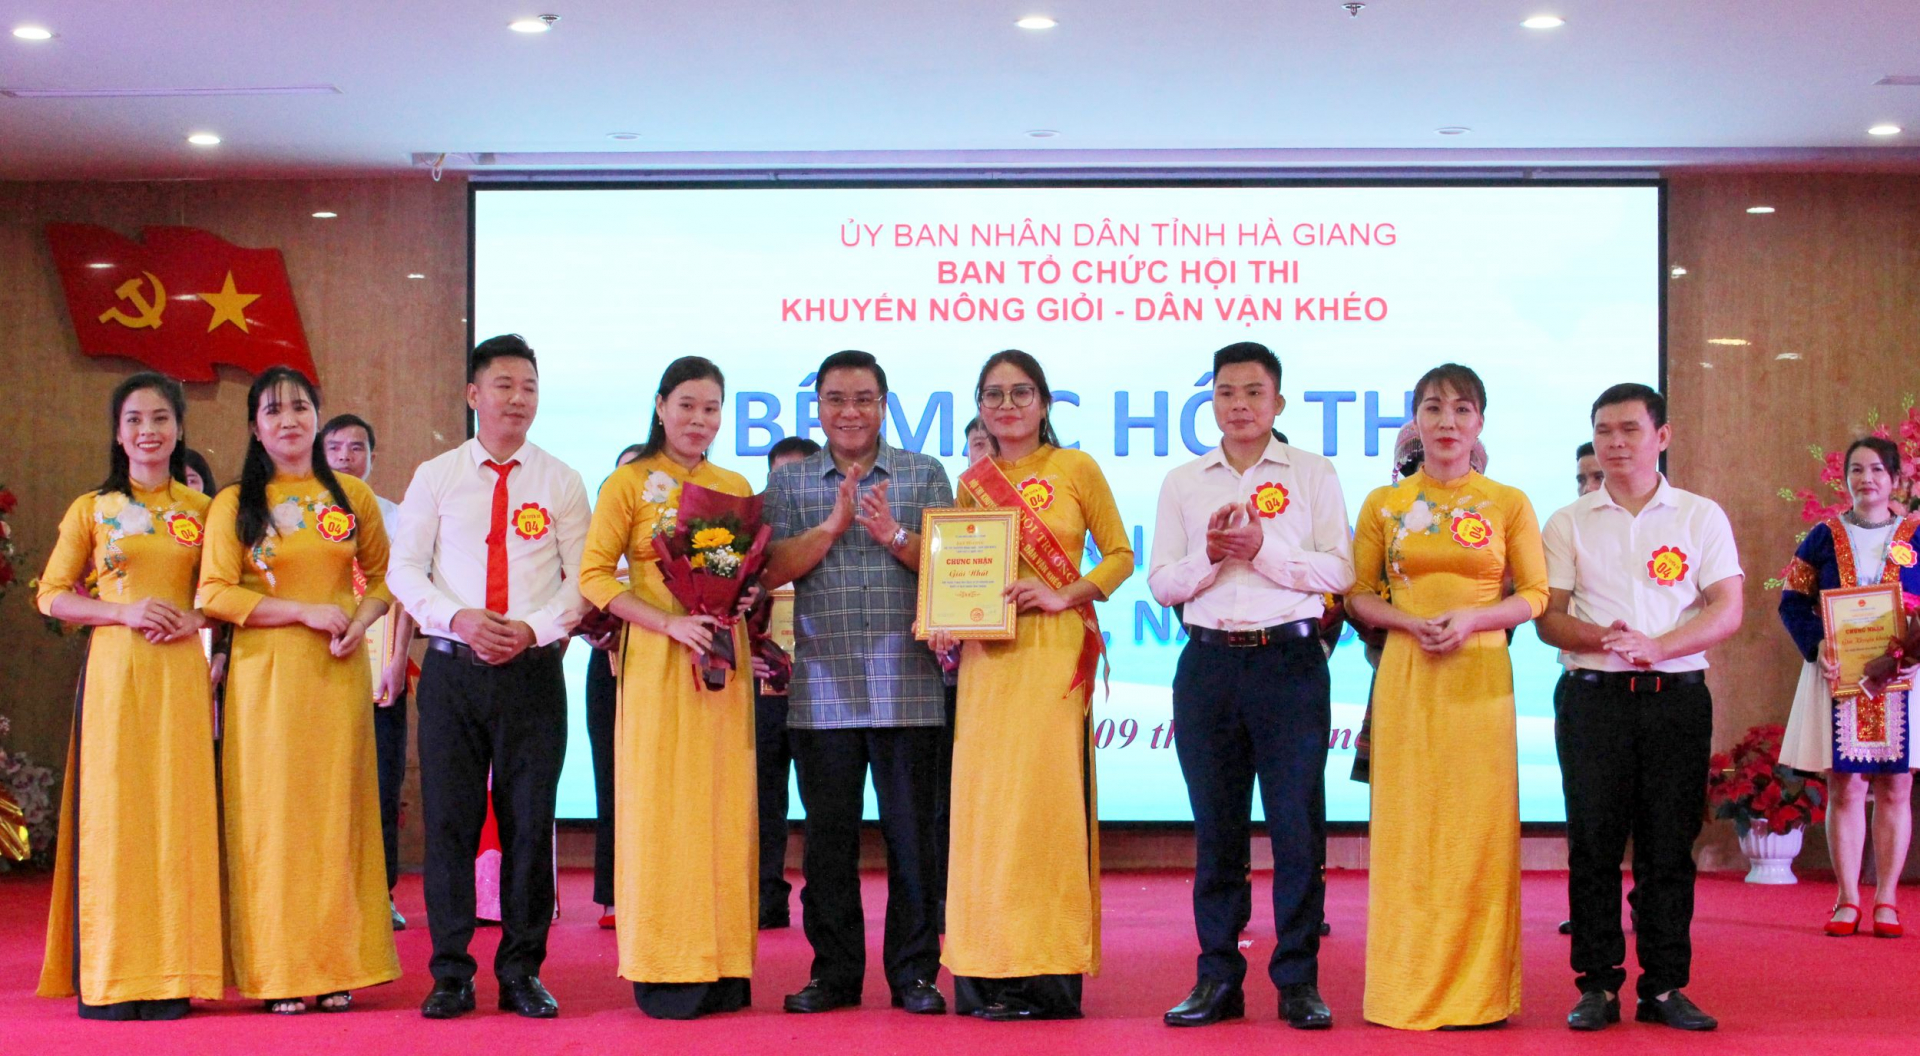 Đồng chí Hoàng Gia Long, Ủy viên BTV Tỉnh ủy, Phó Chủ tịch Thường trực UBND tỉnh trao giải Nhất cho đội huyện Bắc Quang.